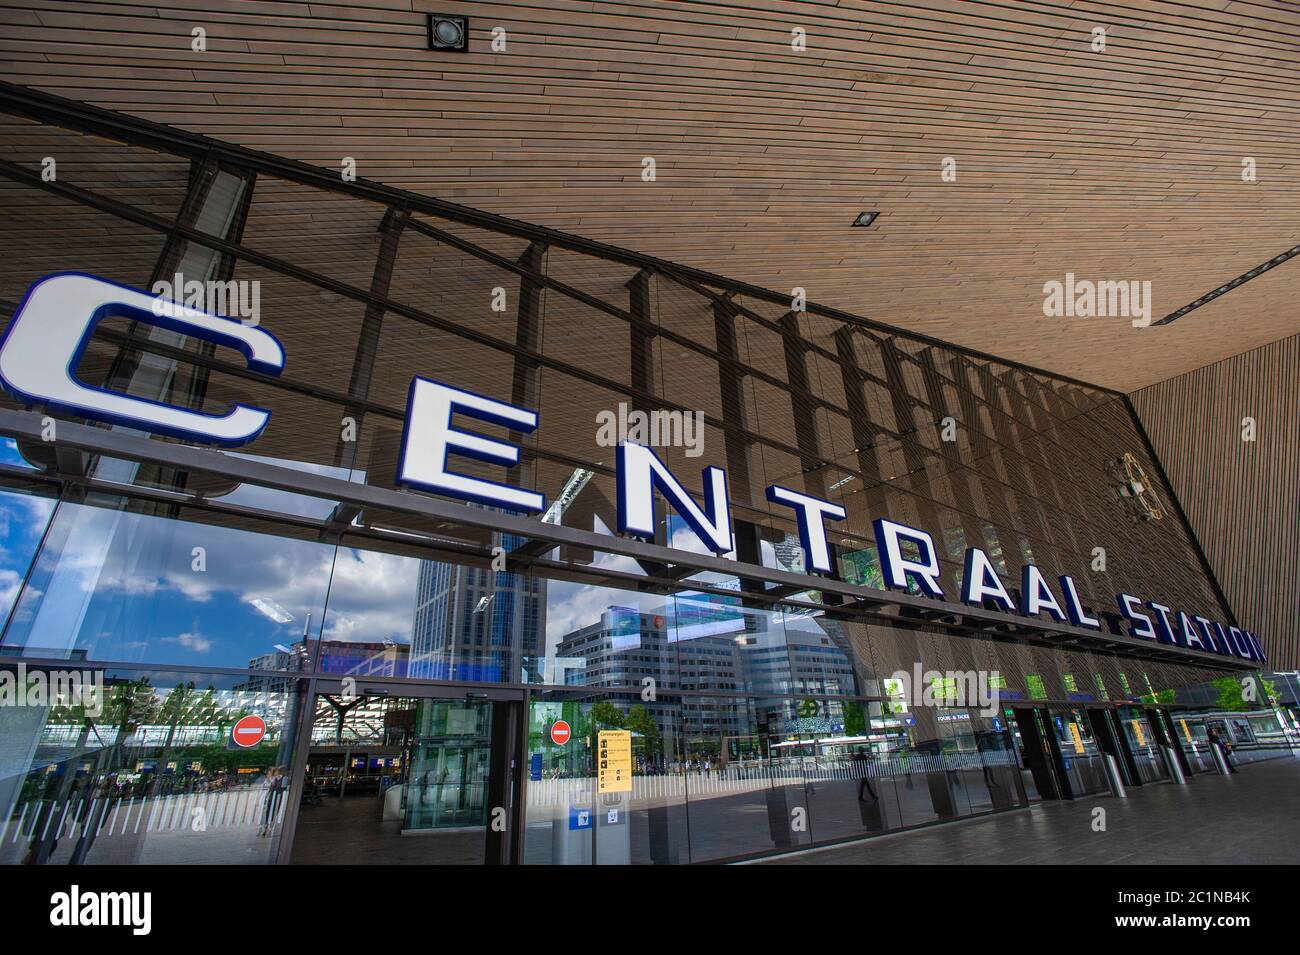 Stazione centrale di Rotterdam, Rotterdam, Paesi Bassi. Inizio progettazione: 2003. Inizio lavori: 2007. Data di completamento: 2014. Cliente: Gemeentewerken Ro Foto Stock